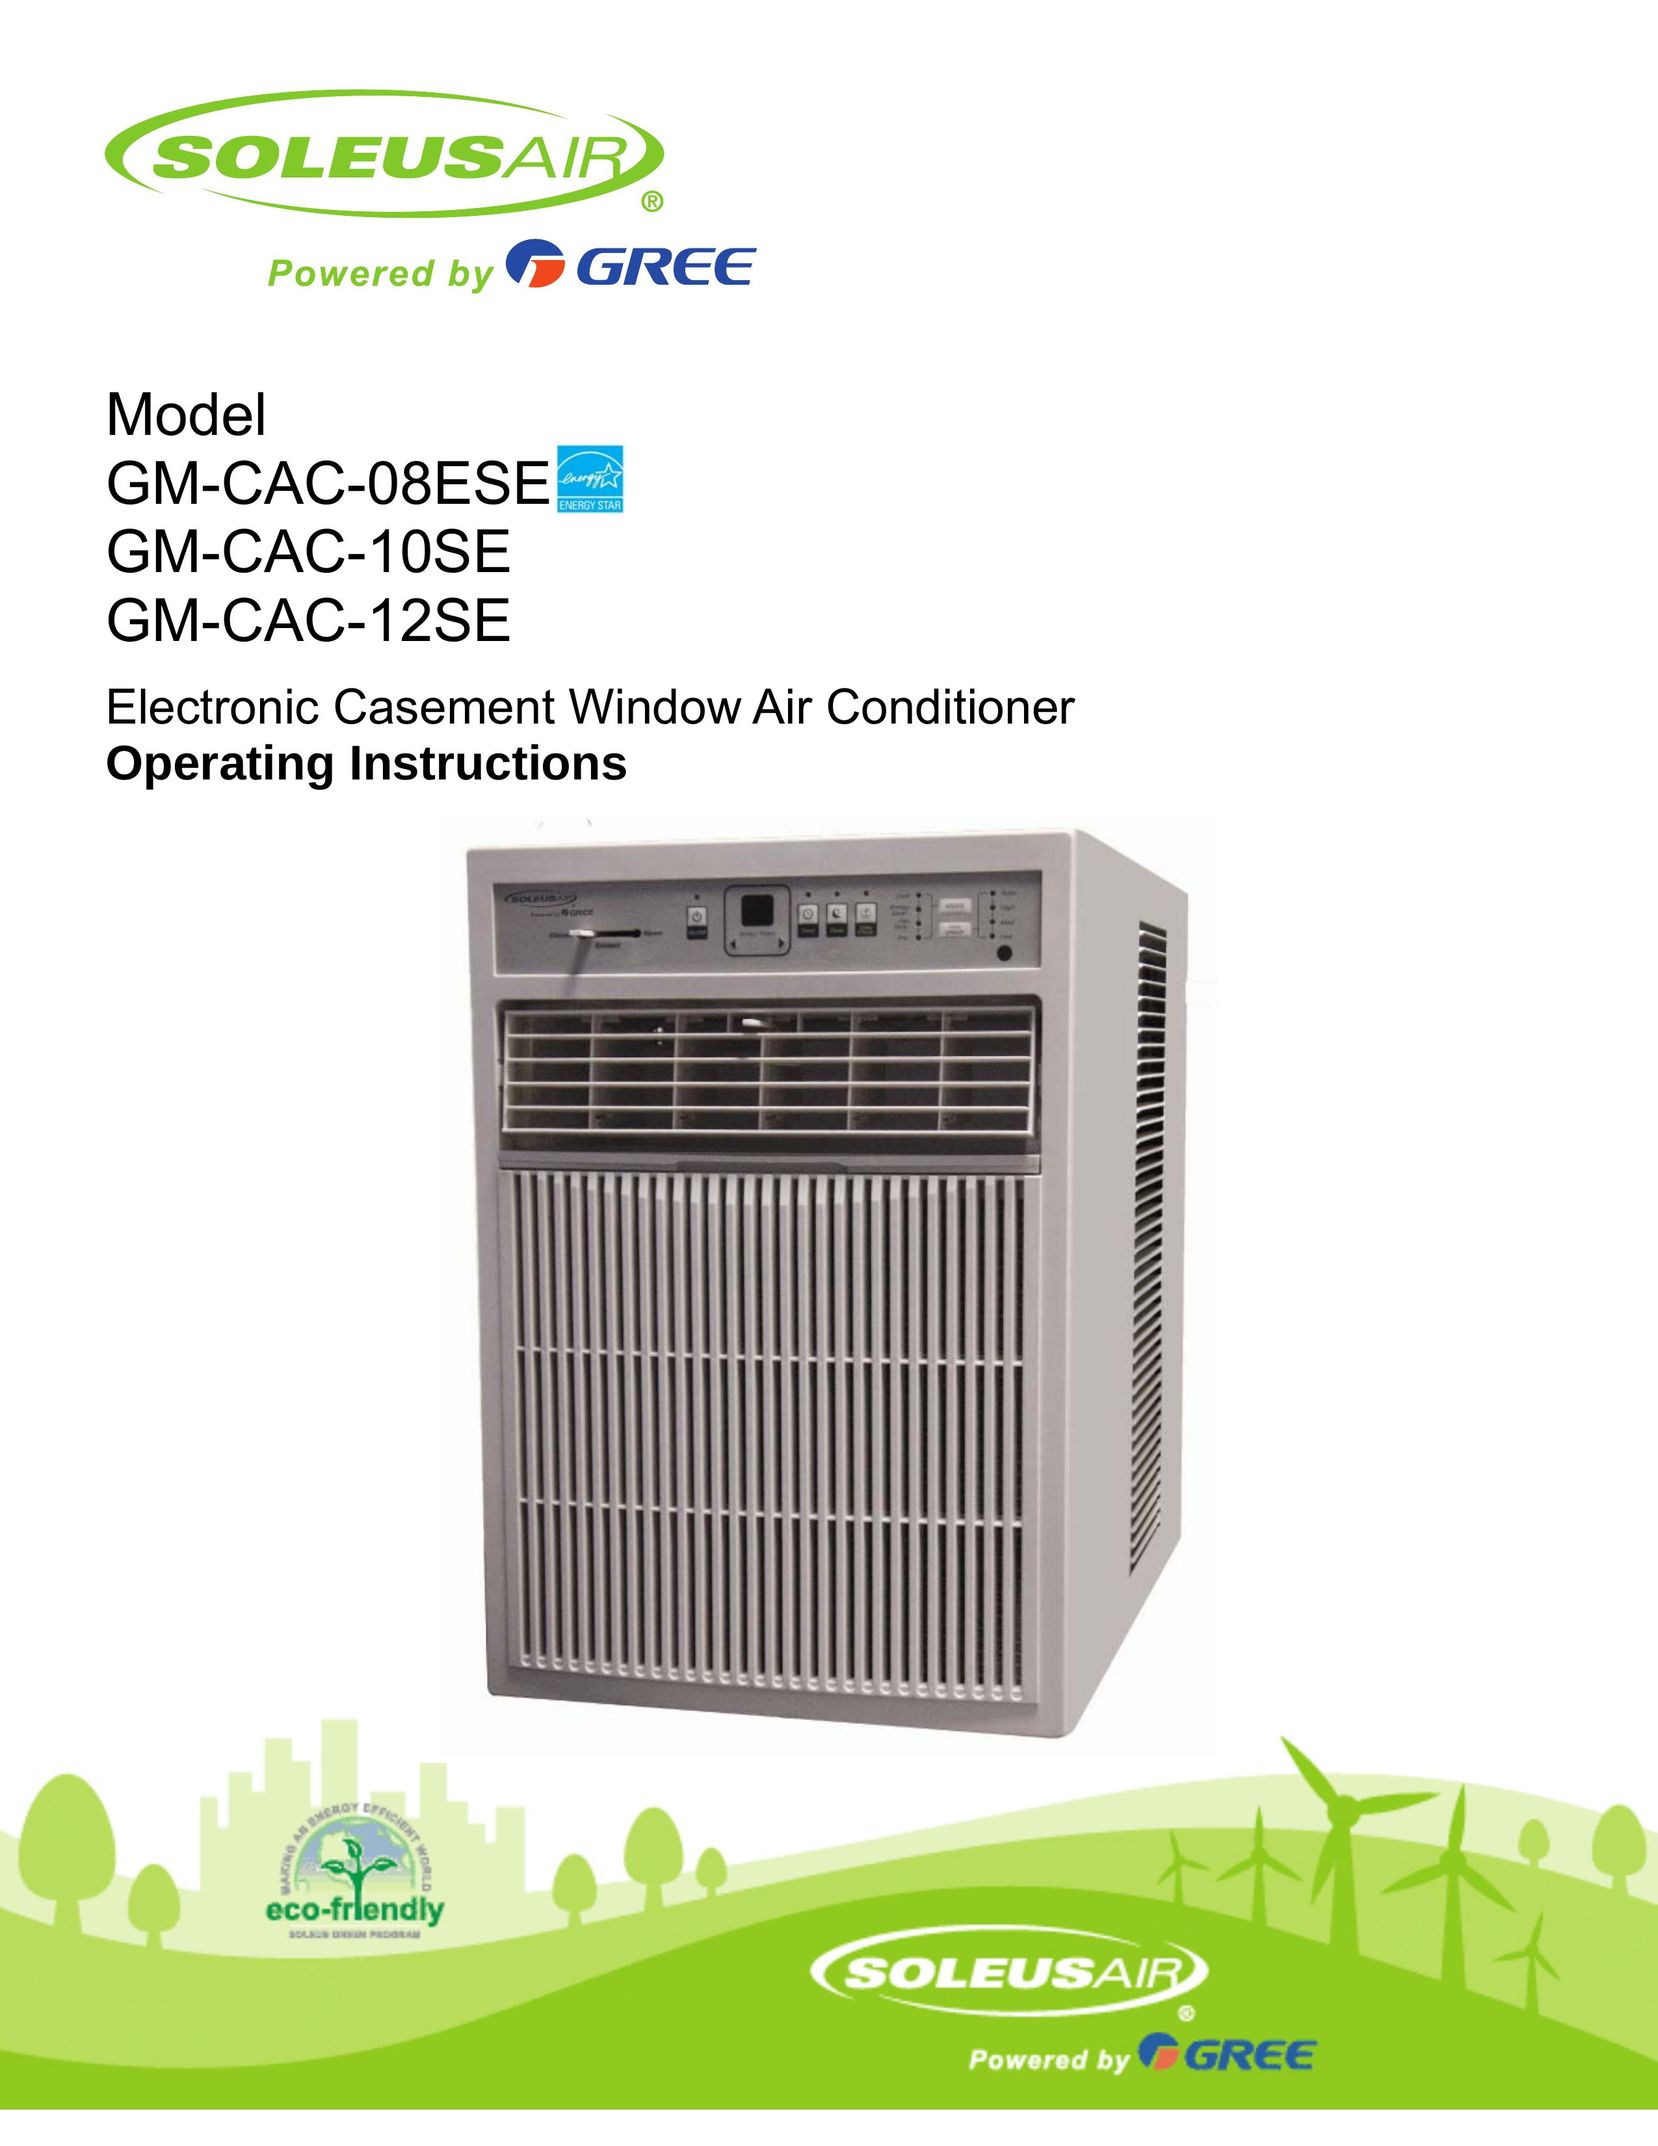 Soleus Air GM-CAC-12SE Air Conditioner User Manual